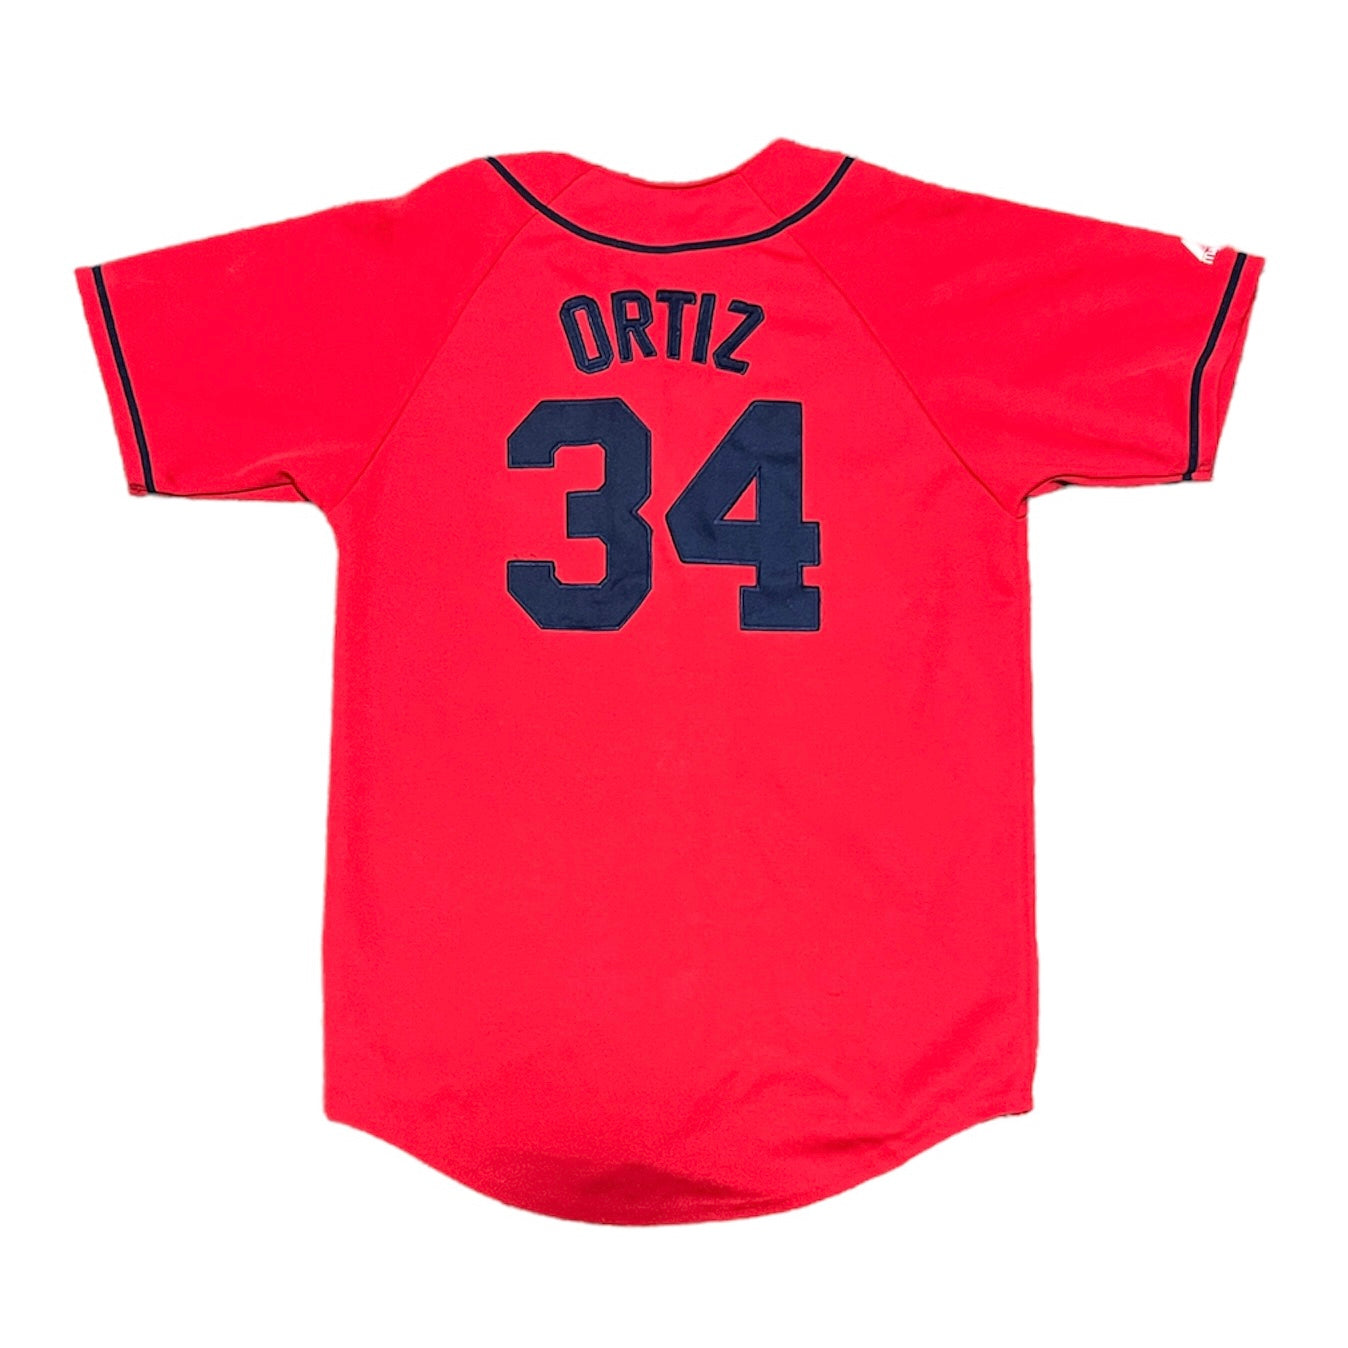 Boston Red Sox David Ortiz 2004 Baseball Jersey Size Small